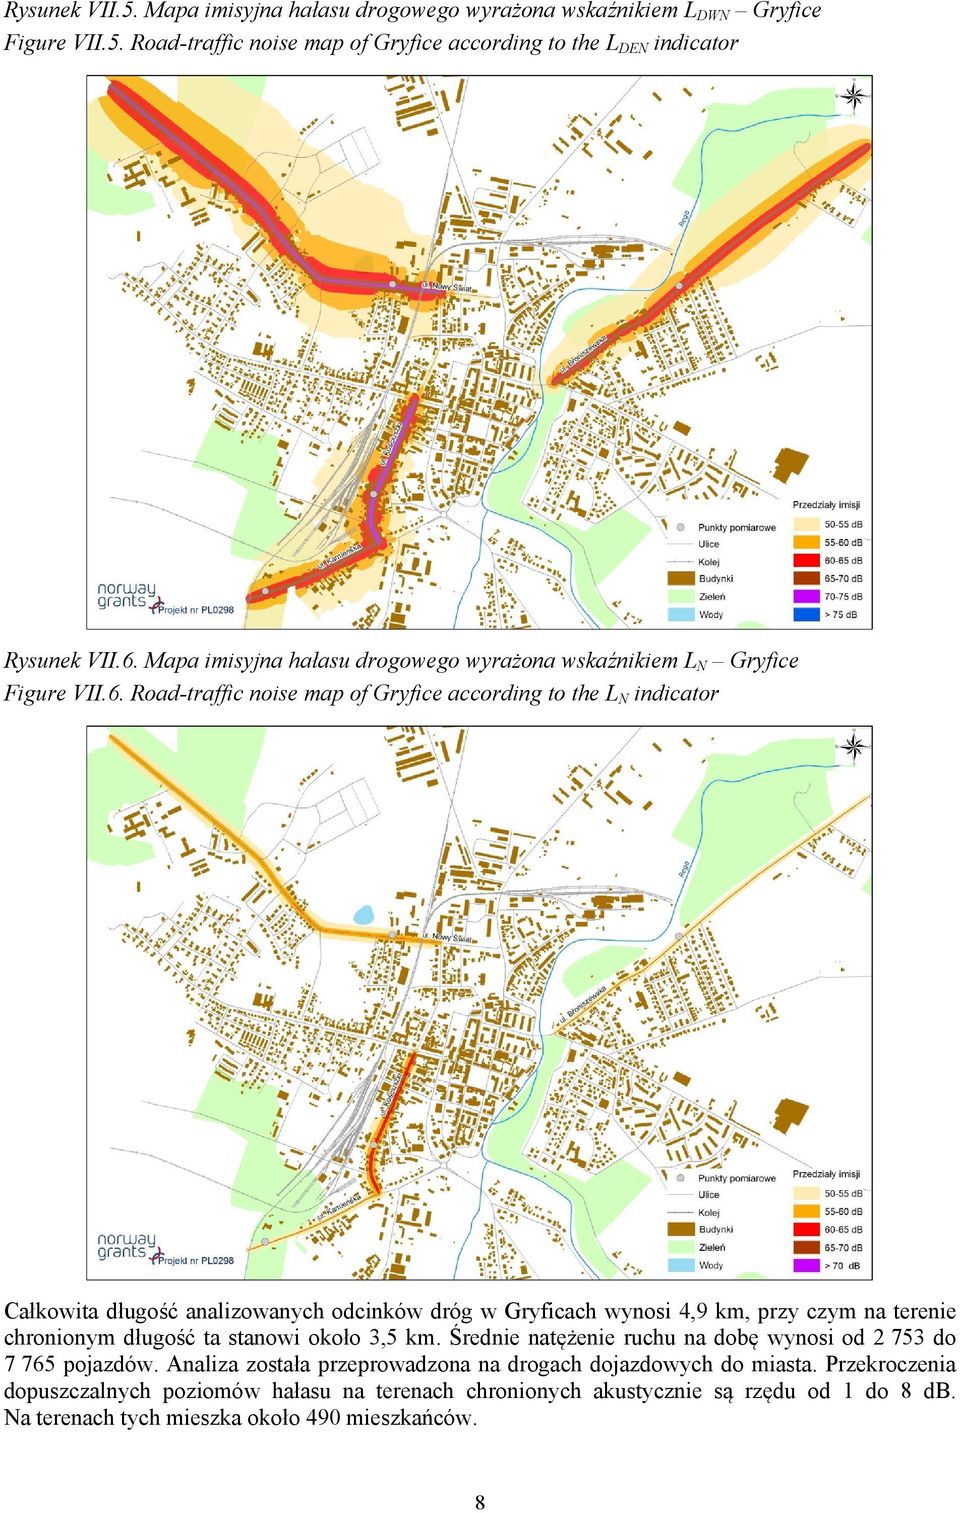 Road-traffic noise map of Gryfice according to the L N indicator Całkowita długość analizowanych odcinków dróg w Gryficach wynosi 4,9 km, przy czym na terenie chronionym długość ta